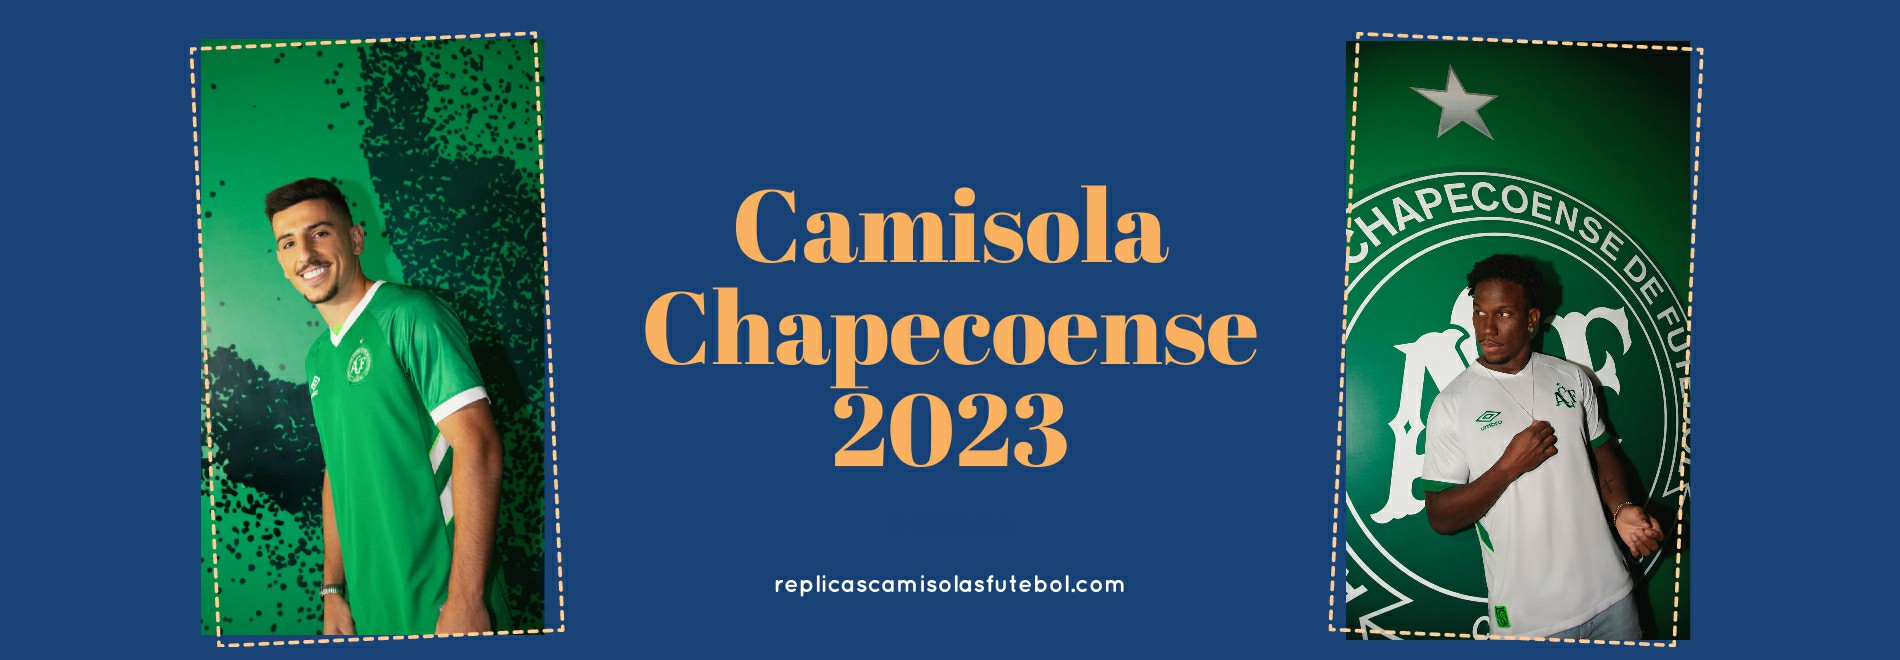 Camisola Chapecoense 2023-2024